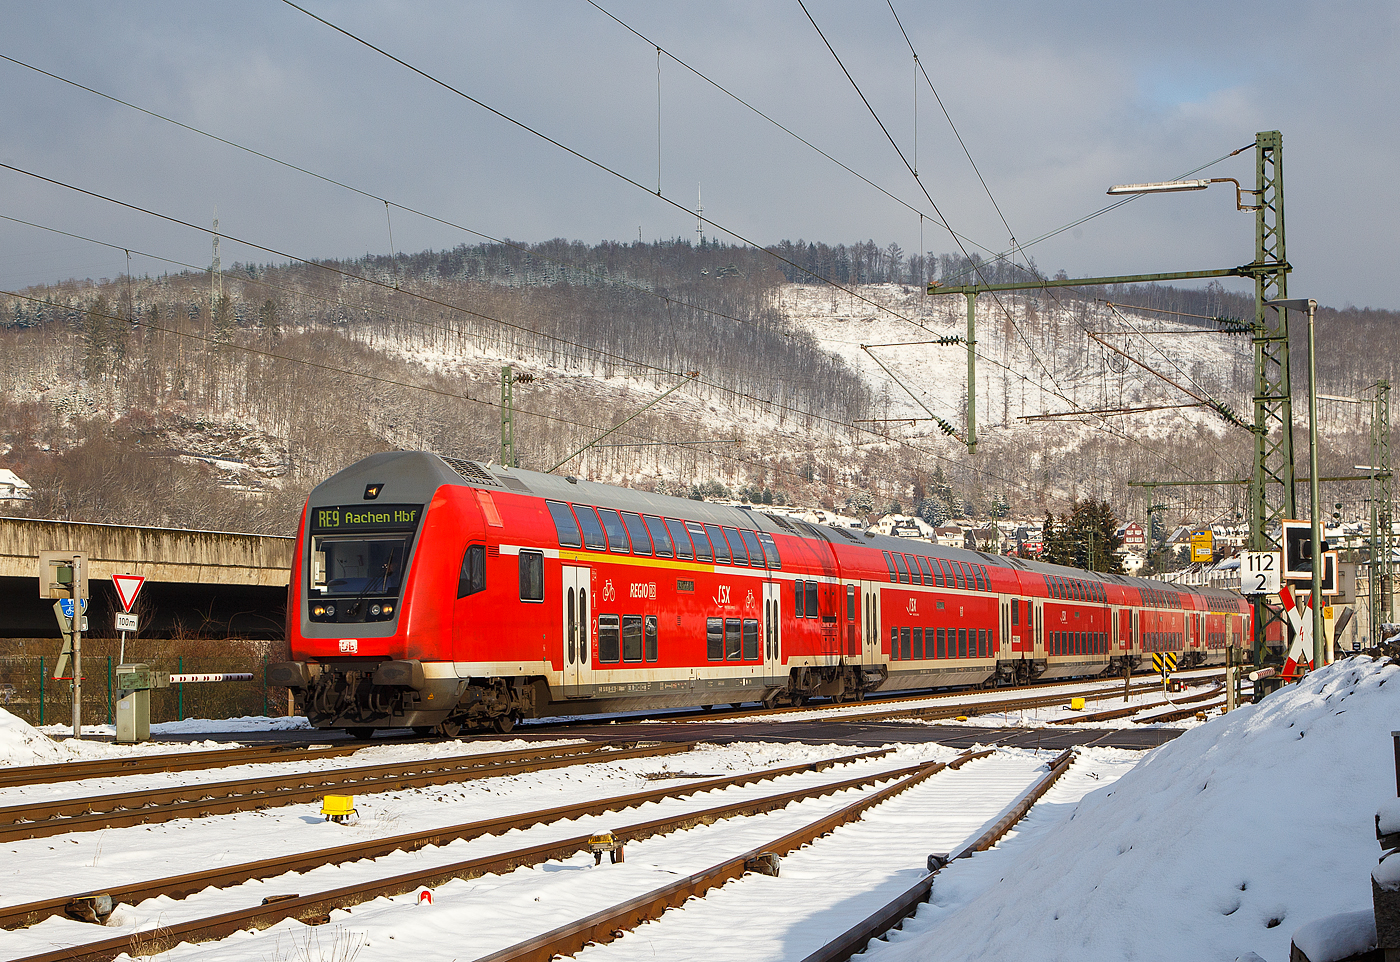 Steuerwagen voraus rauscht der RE 9 rsx - Rhein-Sieg-Express (Siegen – Köln – Aachen) am 21.01.2023 durch Niederschelden (Sieg) in Richtung Betzdorf.

Vorne der klimatisierte 1./2. Klasse Doppelstock-Steuerwagen (DoSto-Steuerwagen) ist der D-DB 50 80 86-81 118-1 der Gattung DABpbzfa 767.3, vom rsx - „Rhein-Sieg-Express“ der DB Regio NRW der DB Regio NRW. Dieser wurde 2010 von Bombardier im Werk Görlitz gebaut für den „Rhein-Sieg-Express“ der DB Regio NRW. Von der Bauart 767.3 gibt es auch nur 2 Stück diesen und den 119-9 beide sind beim Rhein-Sieg-Express (RE 9) im Einsatz. 

TECHNISCHE DATEN:
Hersteller: Bombardier Werk Görlitz, ex Deutsche Waggonbau AG (DWA)
Spurweite: 1.435 mm
Länge über Puffer: 27.270 mm
Wagenkastenlänge: 26.660 mm
Wagenkastenbreite: 2.784 mm
Höhe über Schienenoberkante: 4.631 mm
Drehzapfenabstand: 20.000 mm
Achsstand im Drehgestell: 2.500 mm
Drehgestellbauart: Görlitz VIII
Leergewicht: 53 t
Höchstgeschwindigkeit: 160 km/h
Bremsbauart: KE-PR-A-Mg-mZ (D)
Sitzplätze: 38 (1.Klasse) / 41 (2. Klasse) 
Toiletten: 1, behindertengerecht, geschlossenes System
Bemerkungen: 2 Mehrzweckabteil, 1 Dienstraum, uneingeschränkt dieselloktauglich

Schublok war die 111 168-1 (91 80 6111 168-1 D-DB) der DB Regio NRW.